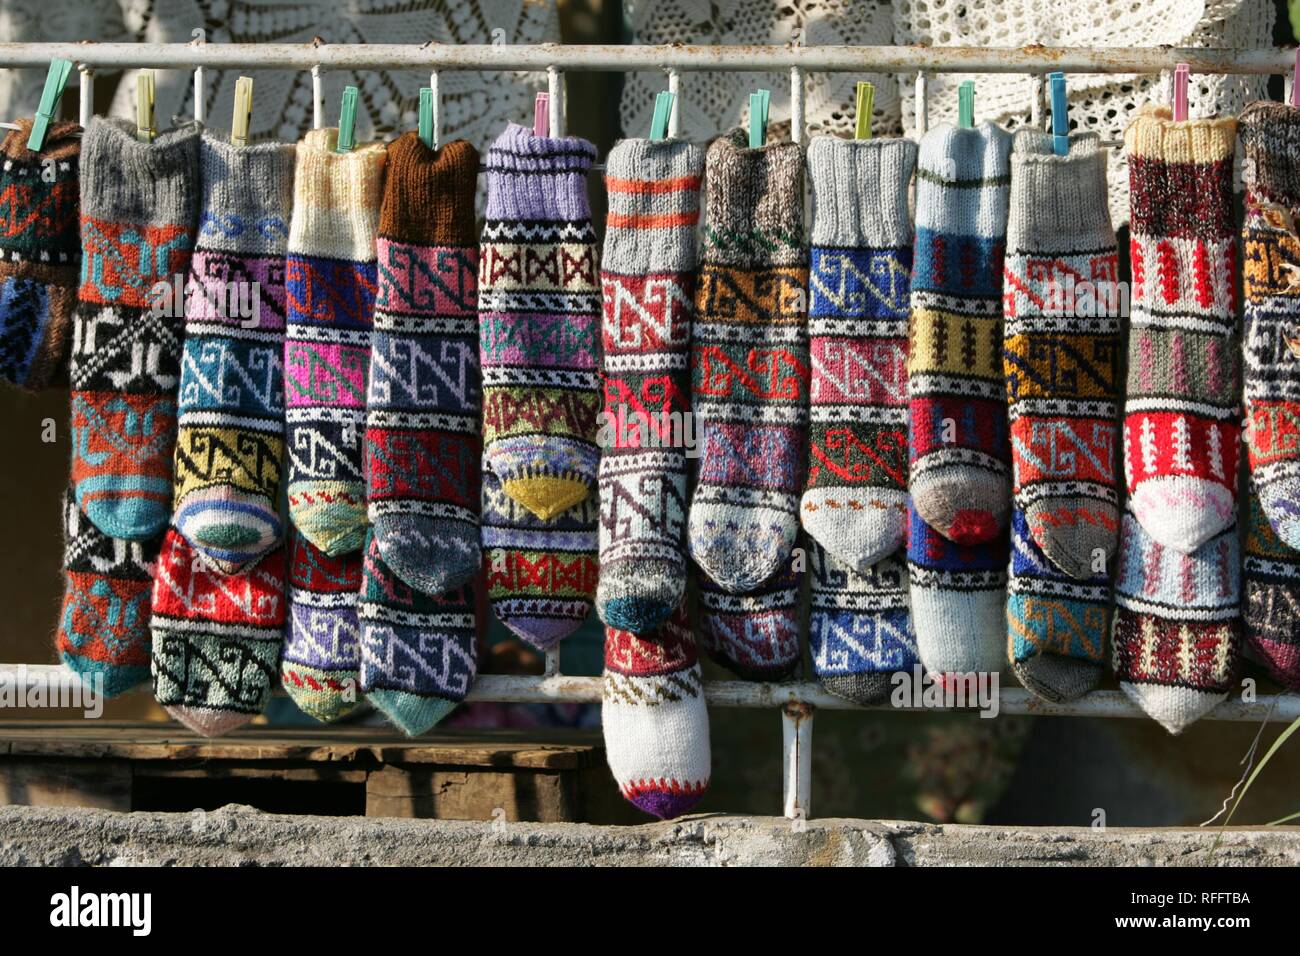 TUR, Turquie, Alanya : Riviera Turque. Boutiques de souvenirs à l'Ic Fort Kale, au-dessus de la ville d'Alanya, chaussettes tricotées Banque D'Images